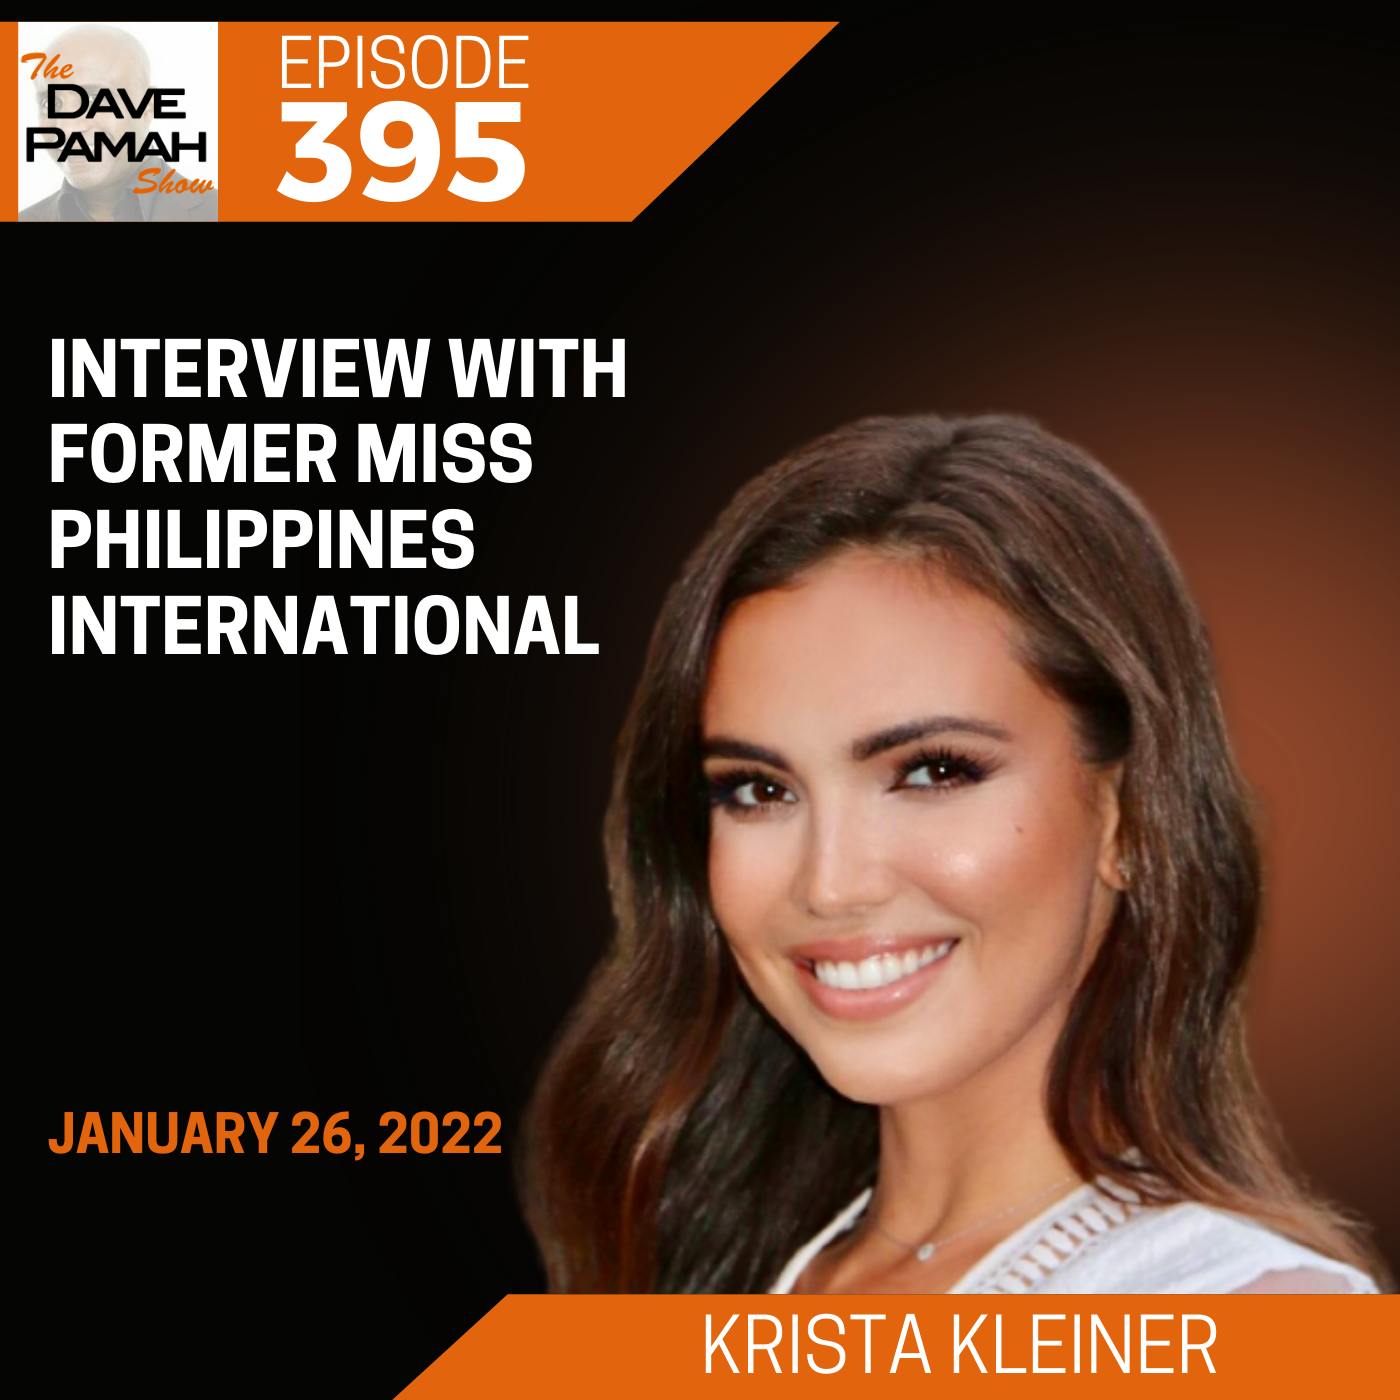 Interview with former Miss Philippines International Krista Kleiner